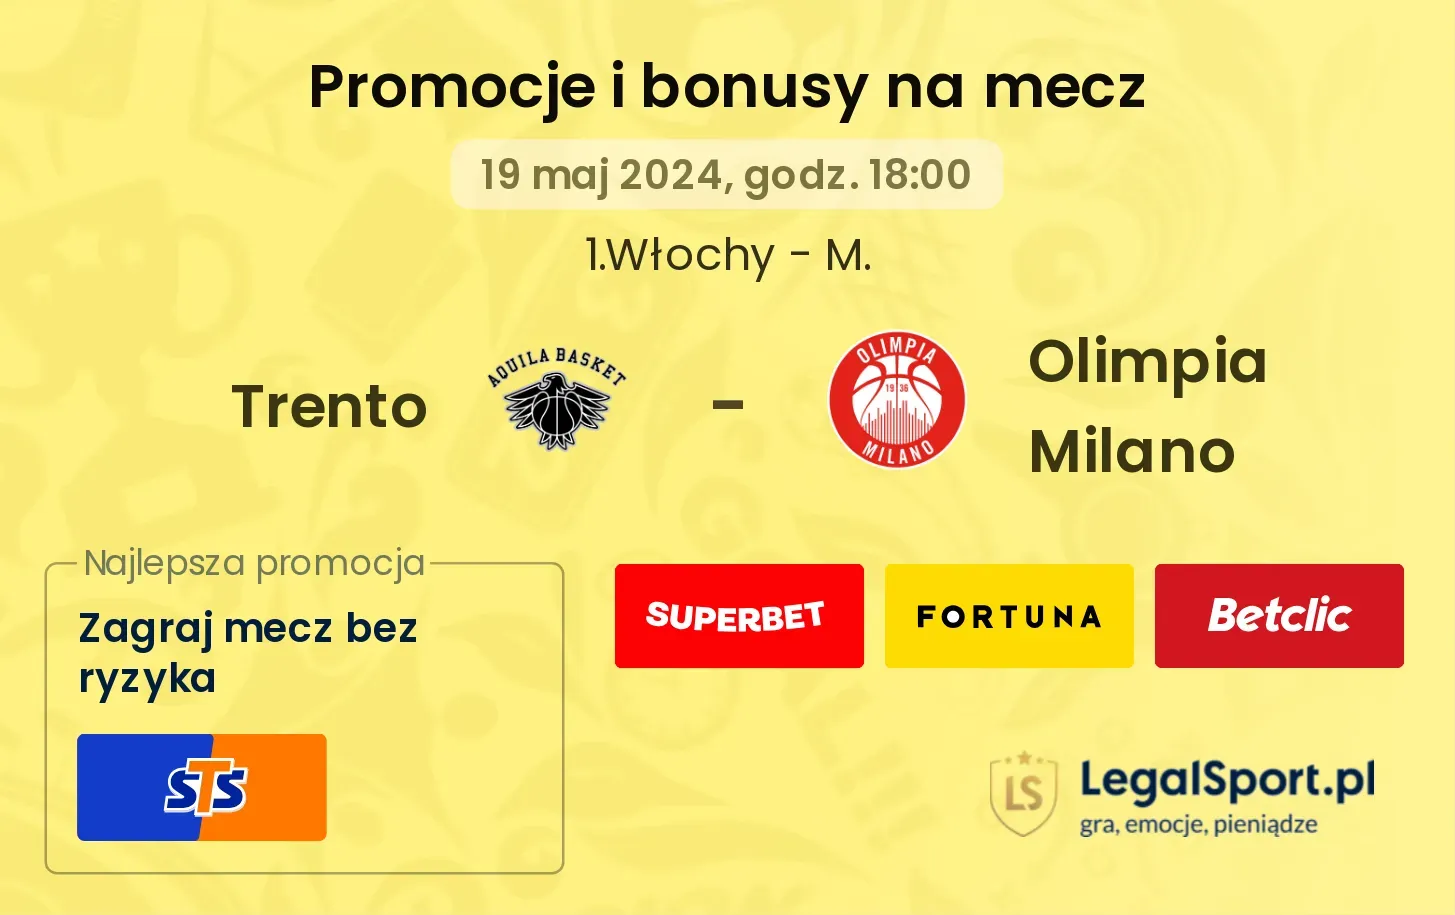 Trento - Olimpia Milano bonusy i promocje (19.05, 18:00)